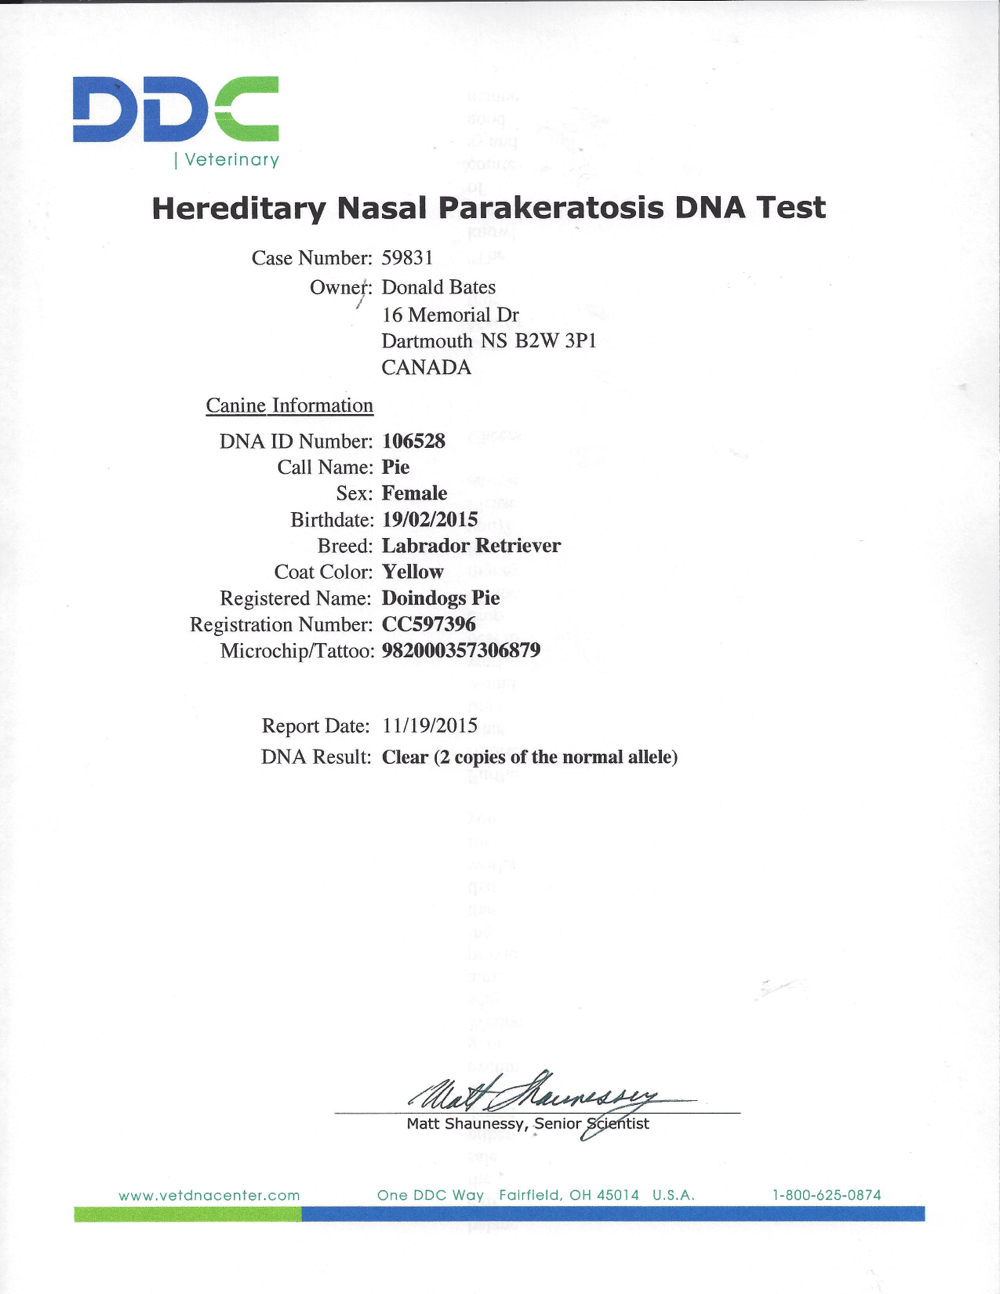 Hereditary nasal Parakeratosis DNA Clear